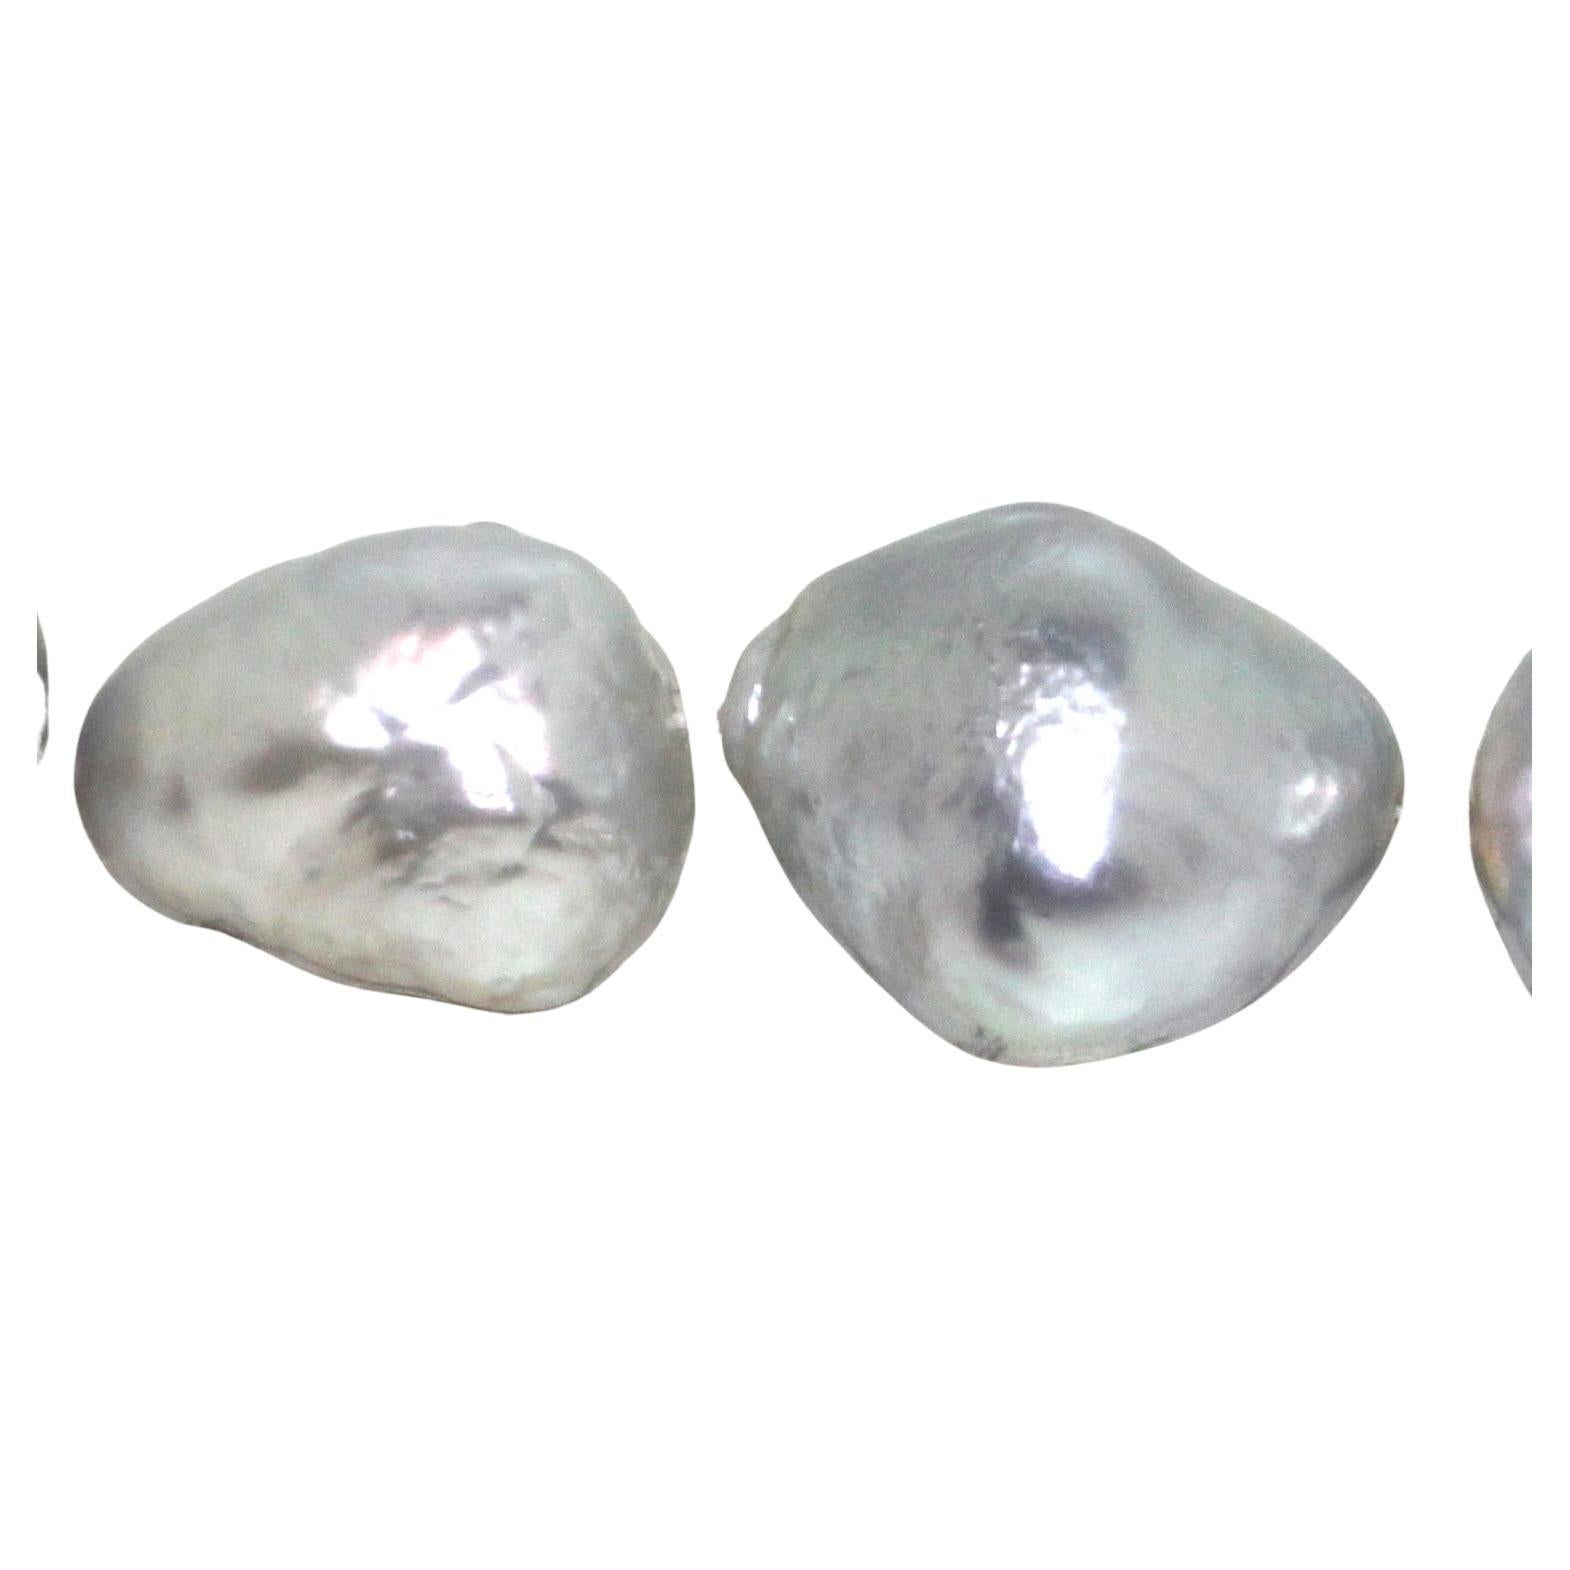 Hakimoto von Jewel Of Ocean 18K Südsee Strang Halskette
18K Weißgold  Mit 1,72 Karren Diamanten
Gewicht (g): 179
Südsee-Zuchtperle 
Perlengröße: (30-32)X(17-20)mm 
Form der Perle: Barock 
Körperfarbe: Weiß 
Orient: Sehr gut
Lüster: Sehr gut